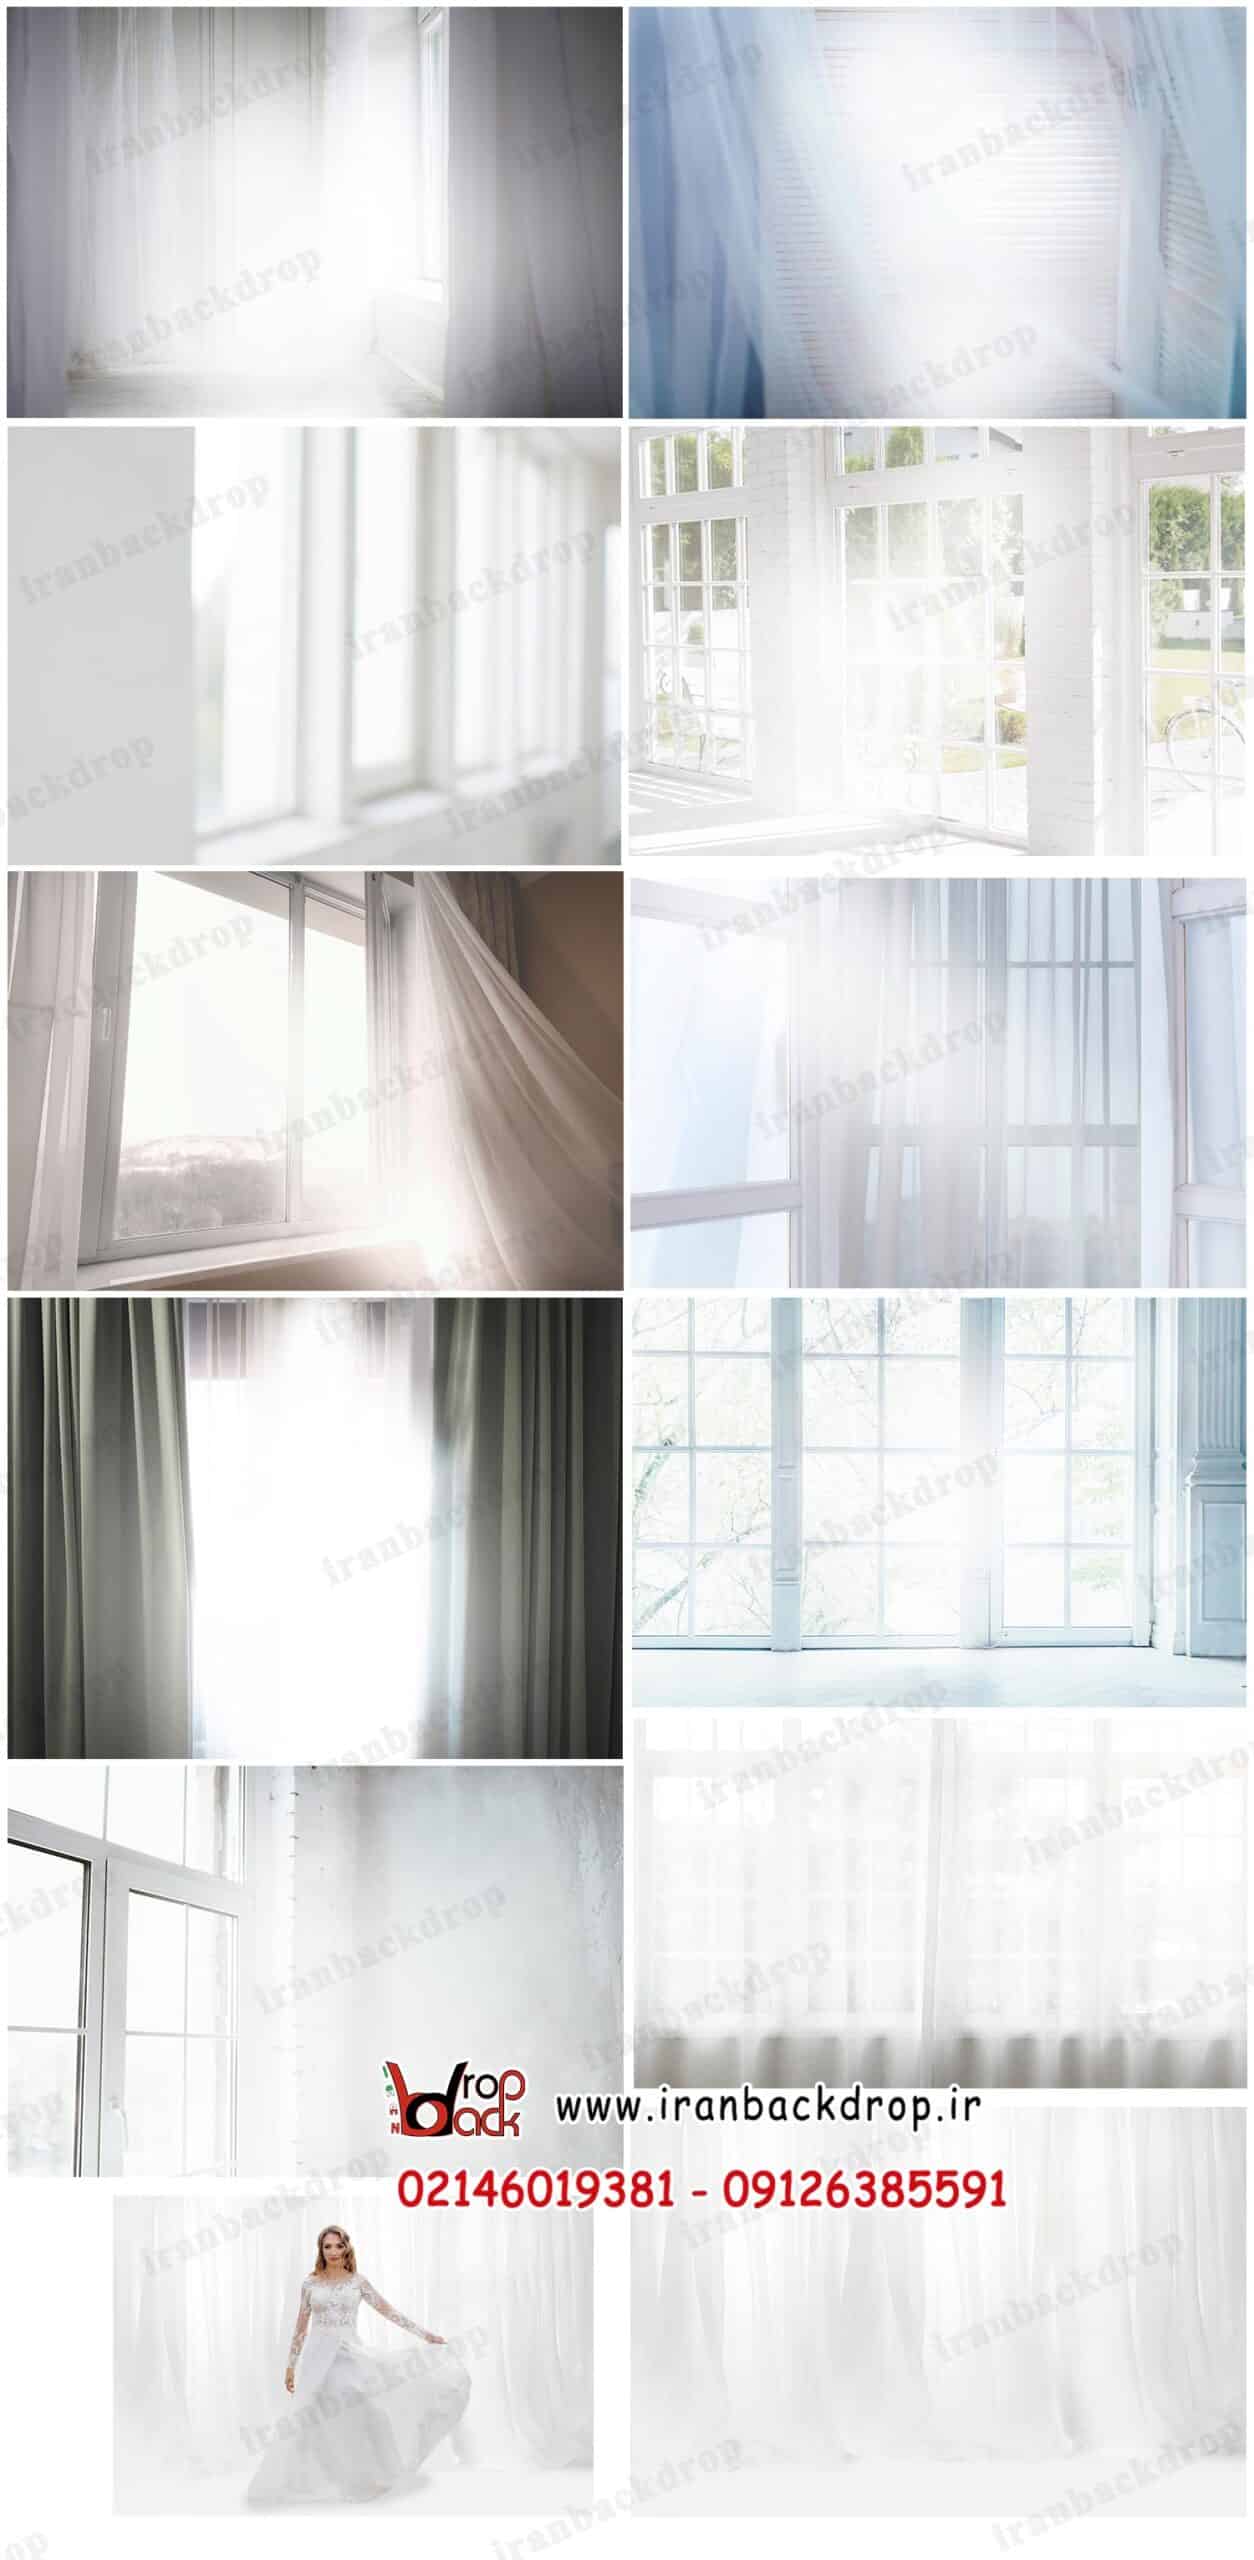 بک گراند عکاسی پنجره سفید